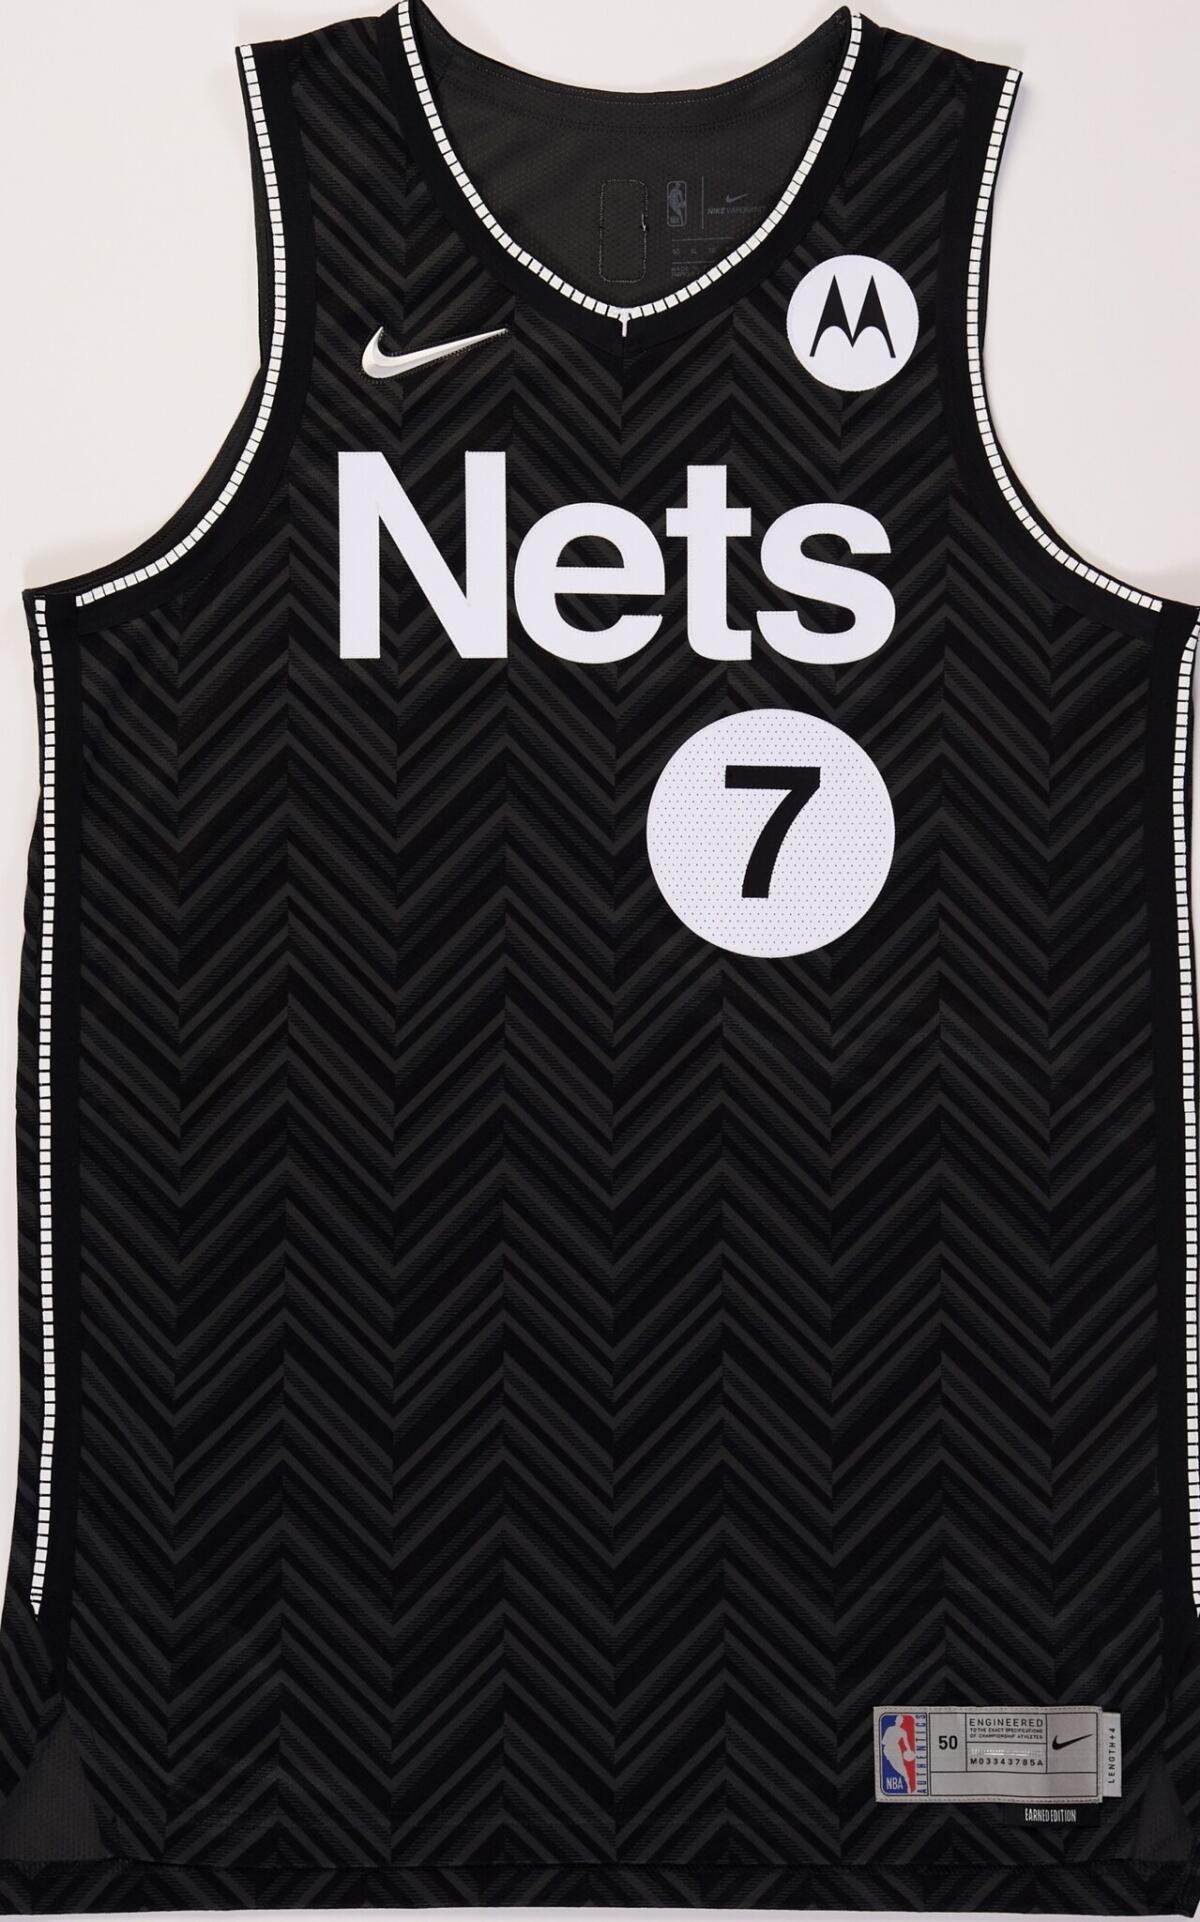 Brooklyn Nets "Earned Edition" jersey